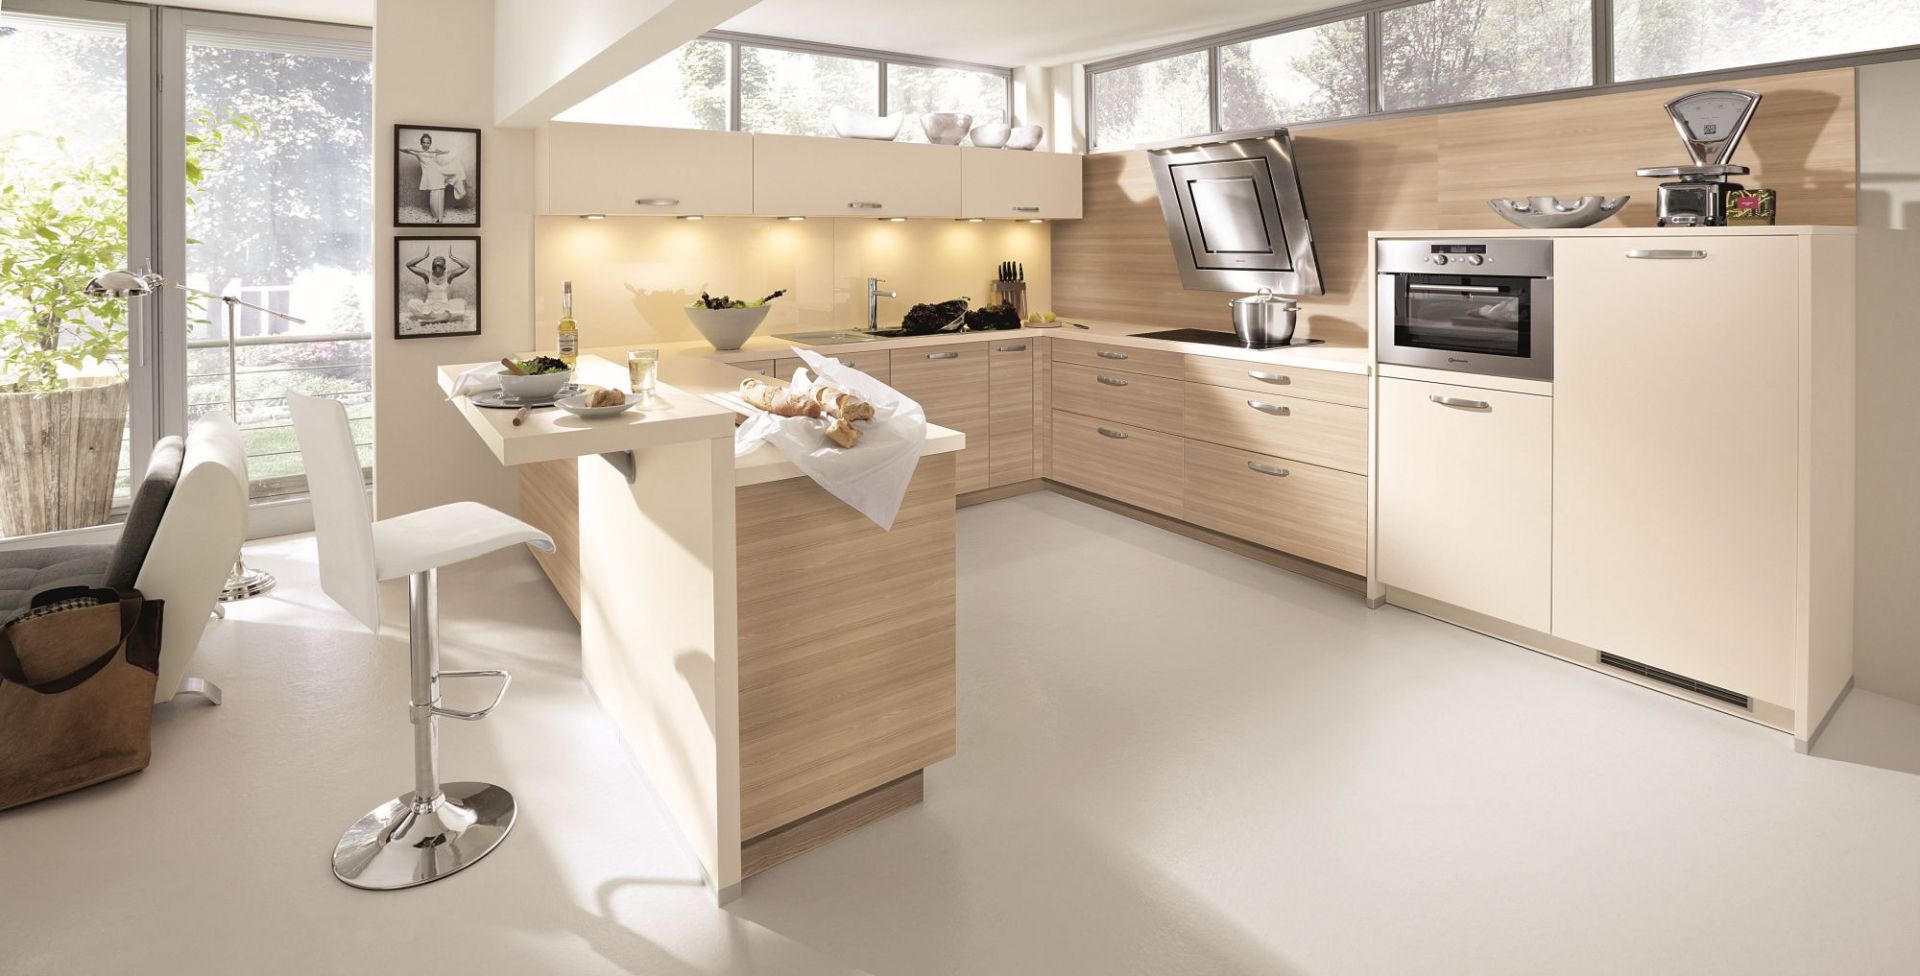 Połączenie jasnego drewna i kolorem beżowym, sprawi, że wnętrze kuchni będzie świeże i bardzo przytulne. Mimo, że urządzone w nowoczesnej stylistyce. Fot. Alno